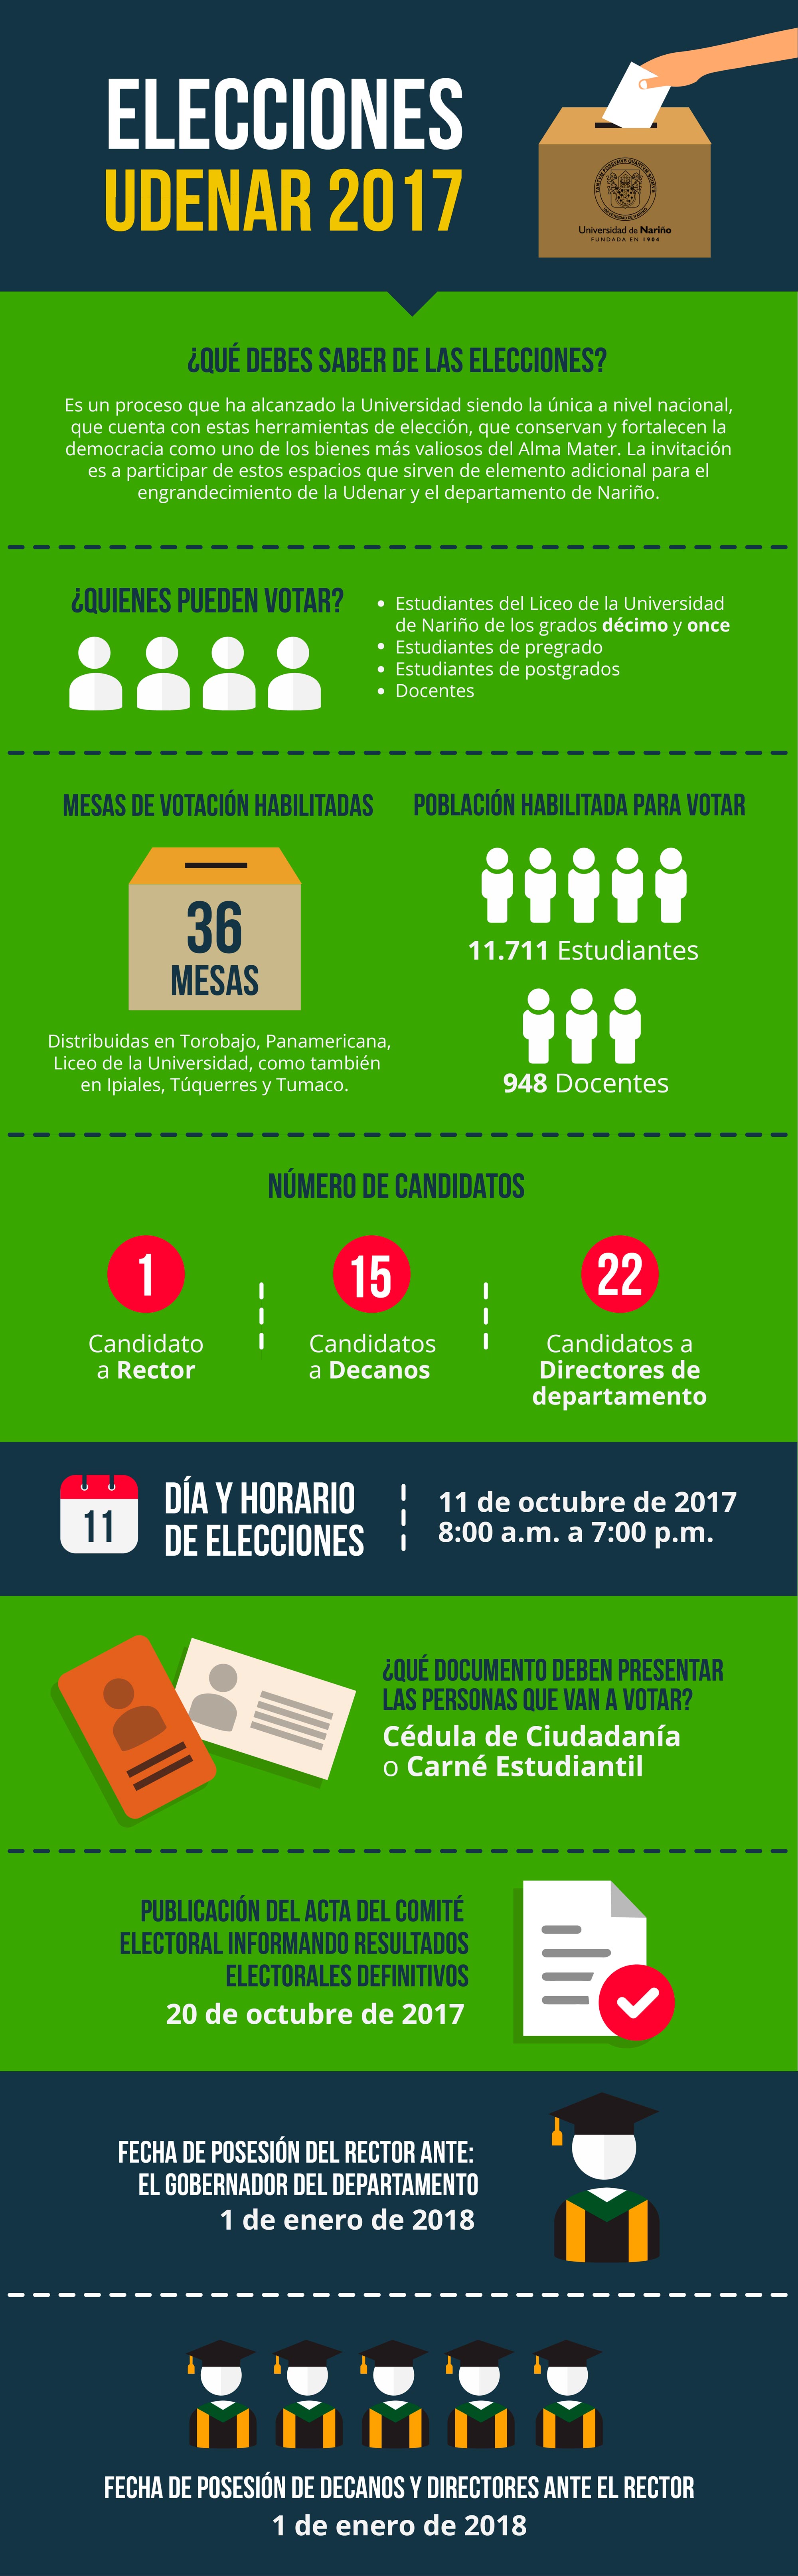 infografia-elecciones-universidad-de-nariño-2017-udenar-periodico